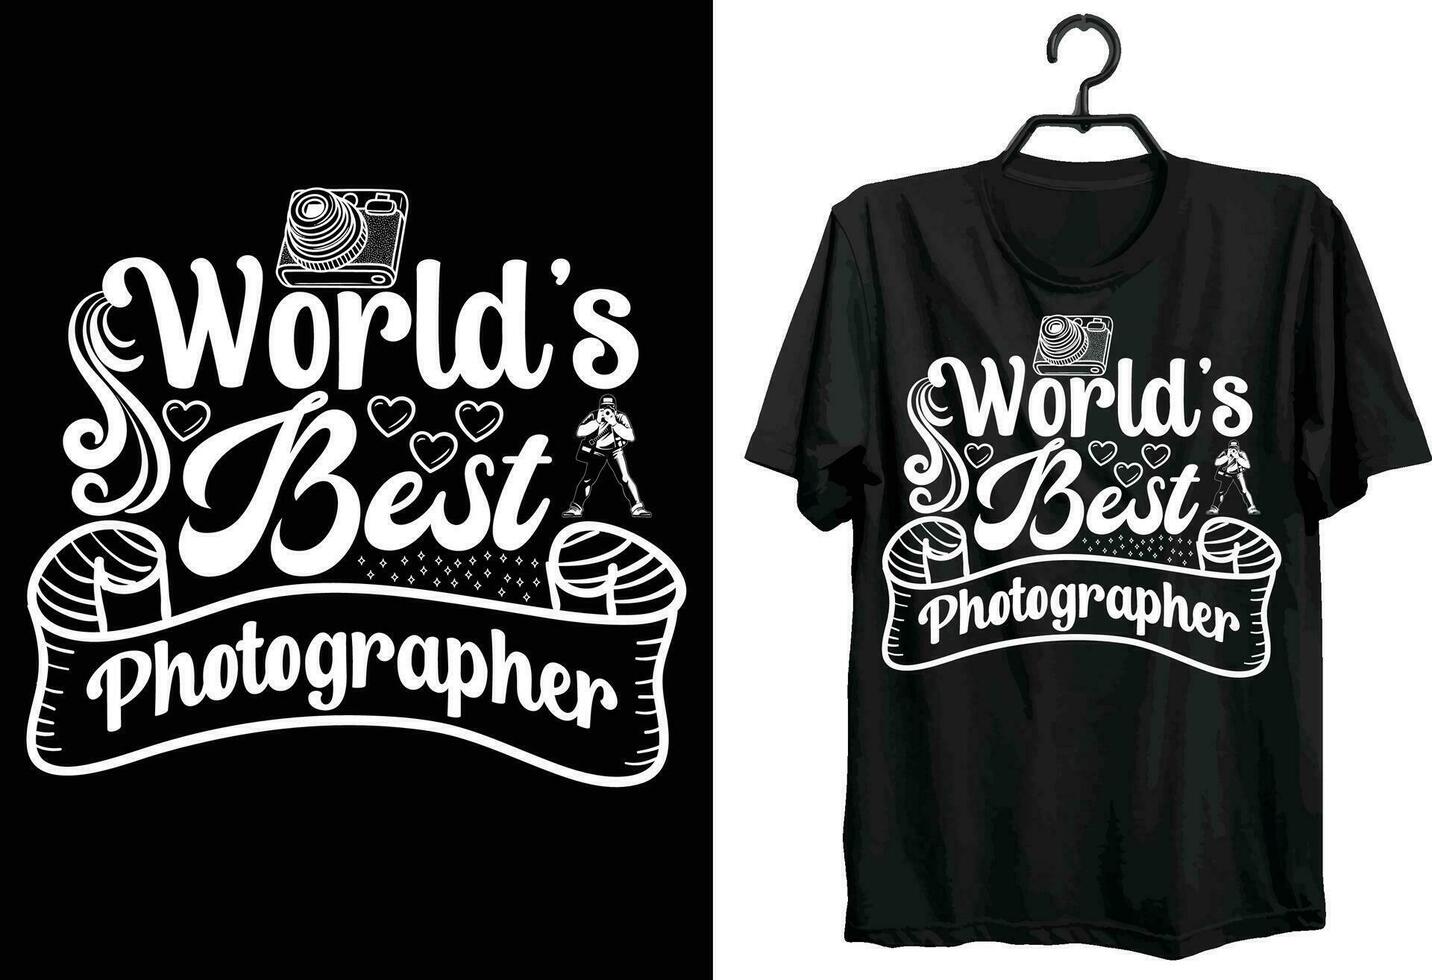 monde la photographie journée T-shirt conception. marrant cadeau photographe T-shirt conception. coutume, typographie, et vecteur T-shirt conception